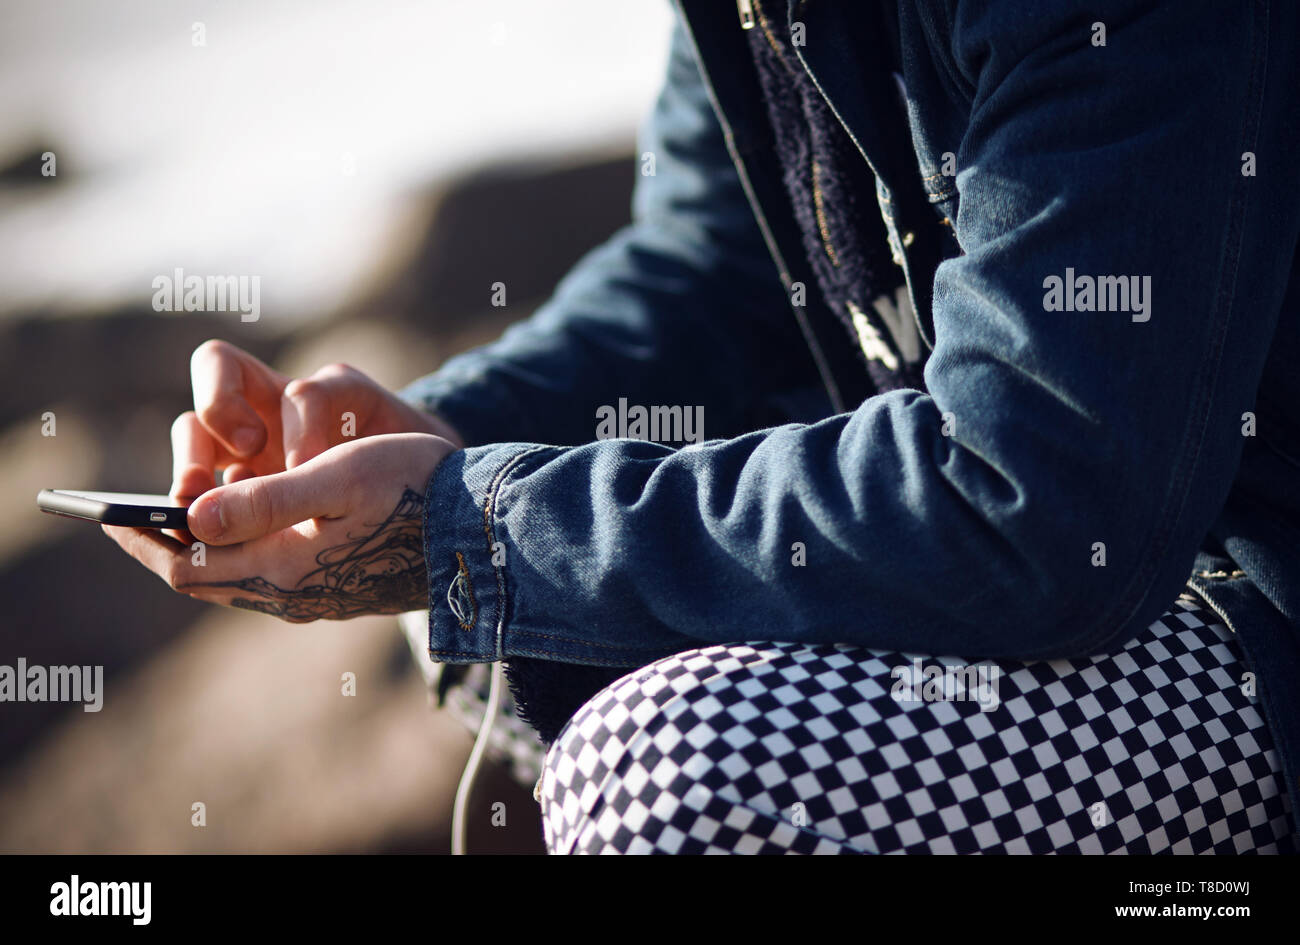 Un hombre vestido de moda en una chaqueta y pantalones de mezclilla plaid posee un teléfono táctil tatuado en sus manos Foto de stock